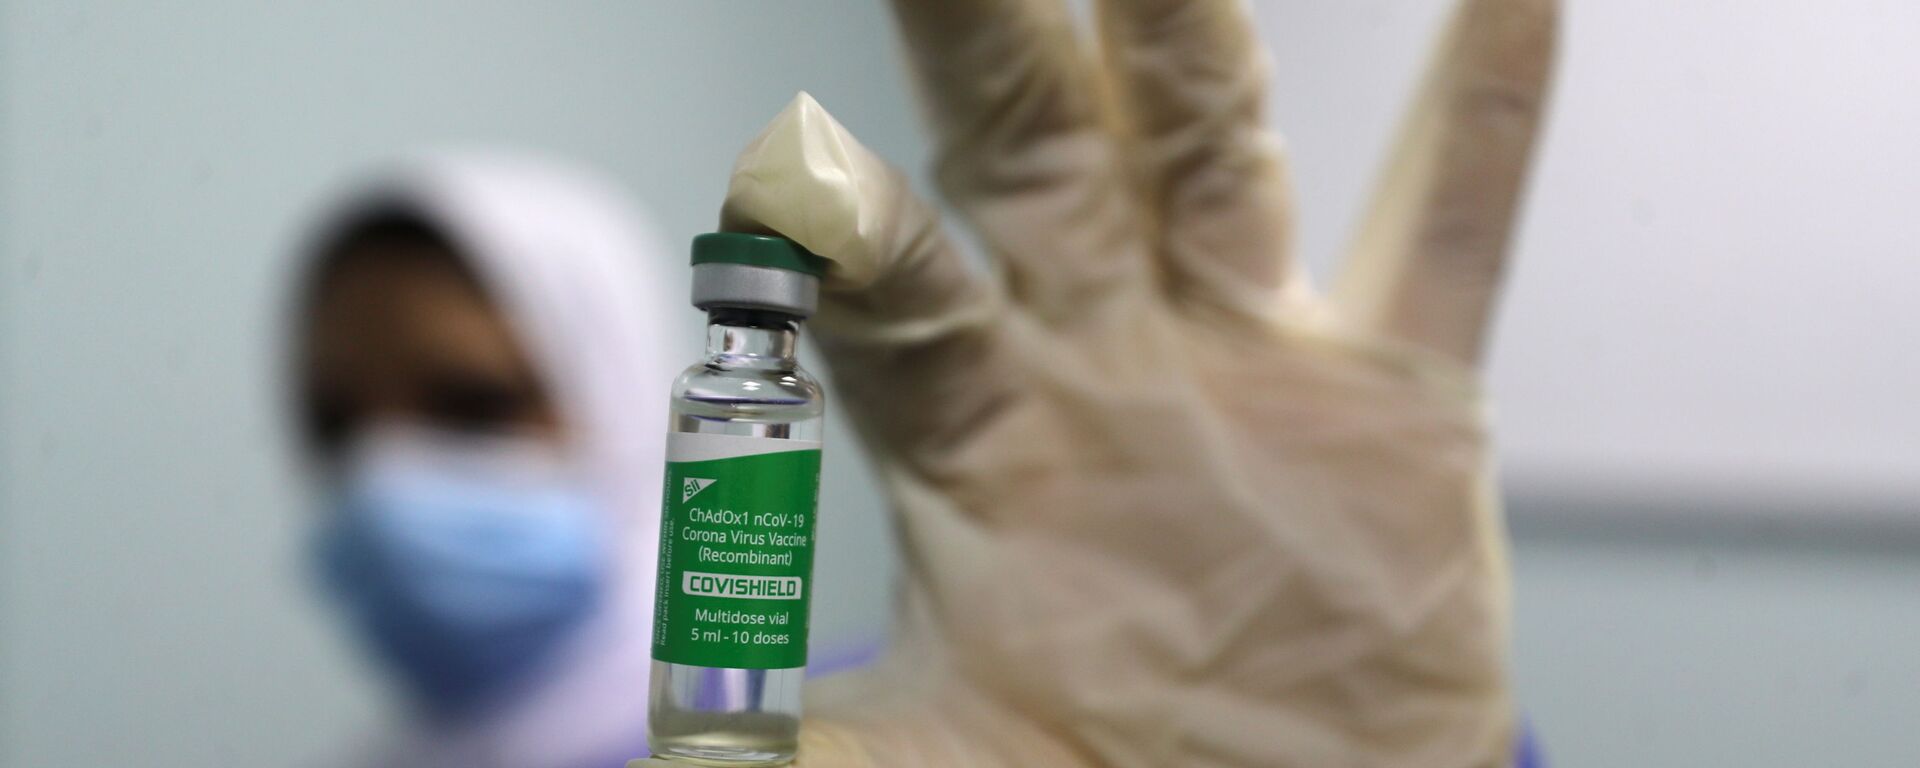 بدء تطعيم واسع النطاق في مصر ضد فيروس كورونا (كوفيد-19)، القاهرة، 4 مارس 2021 - سبوتنيك عربي, 1920, 30.05.2021